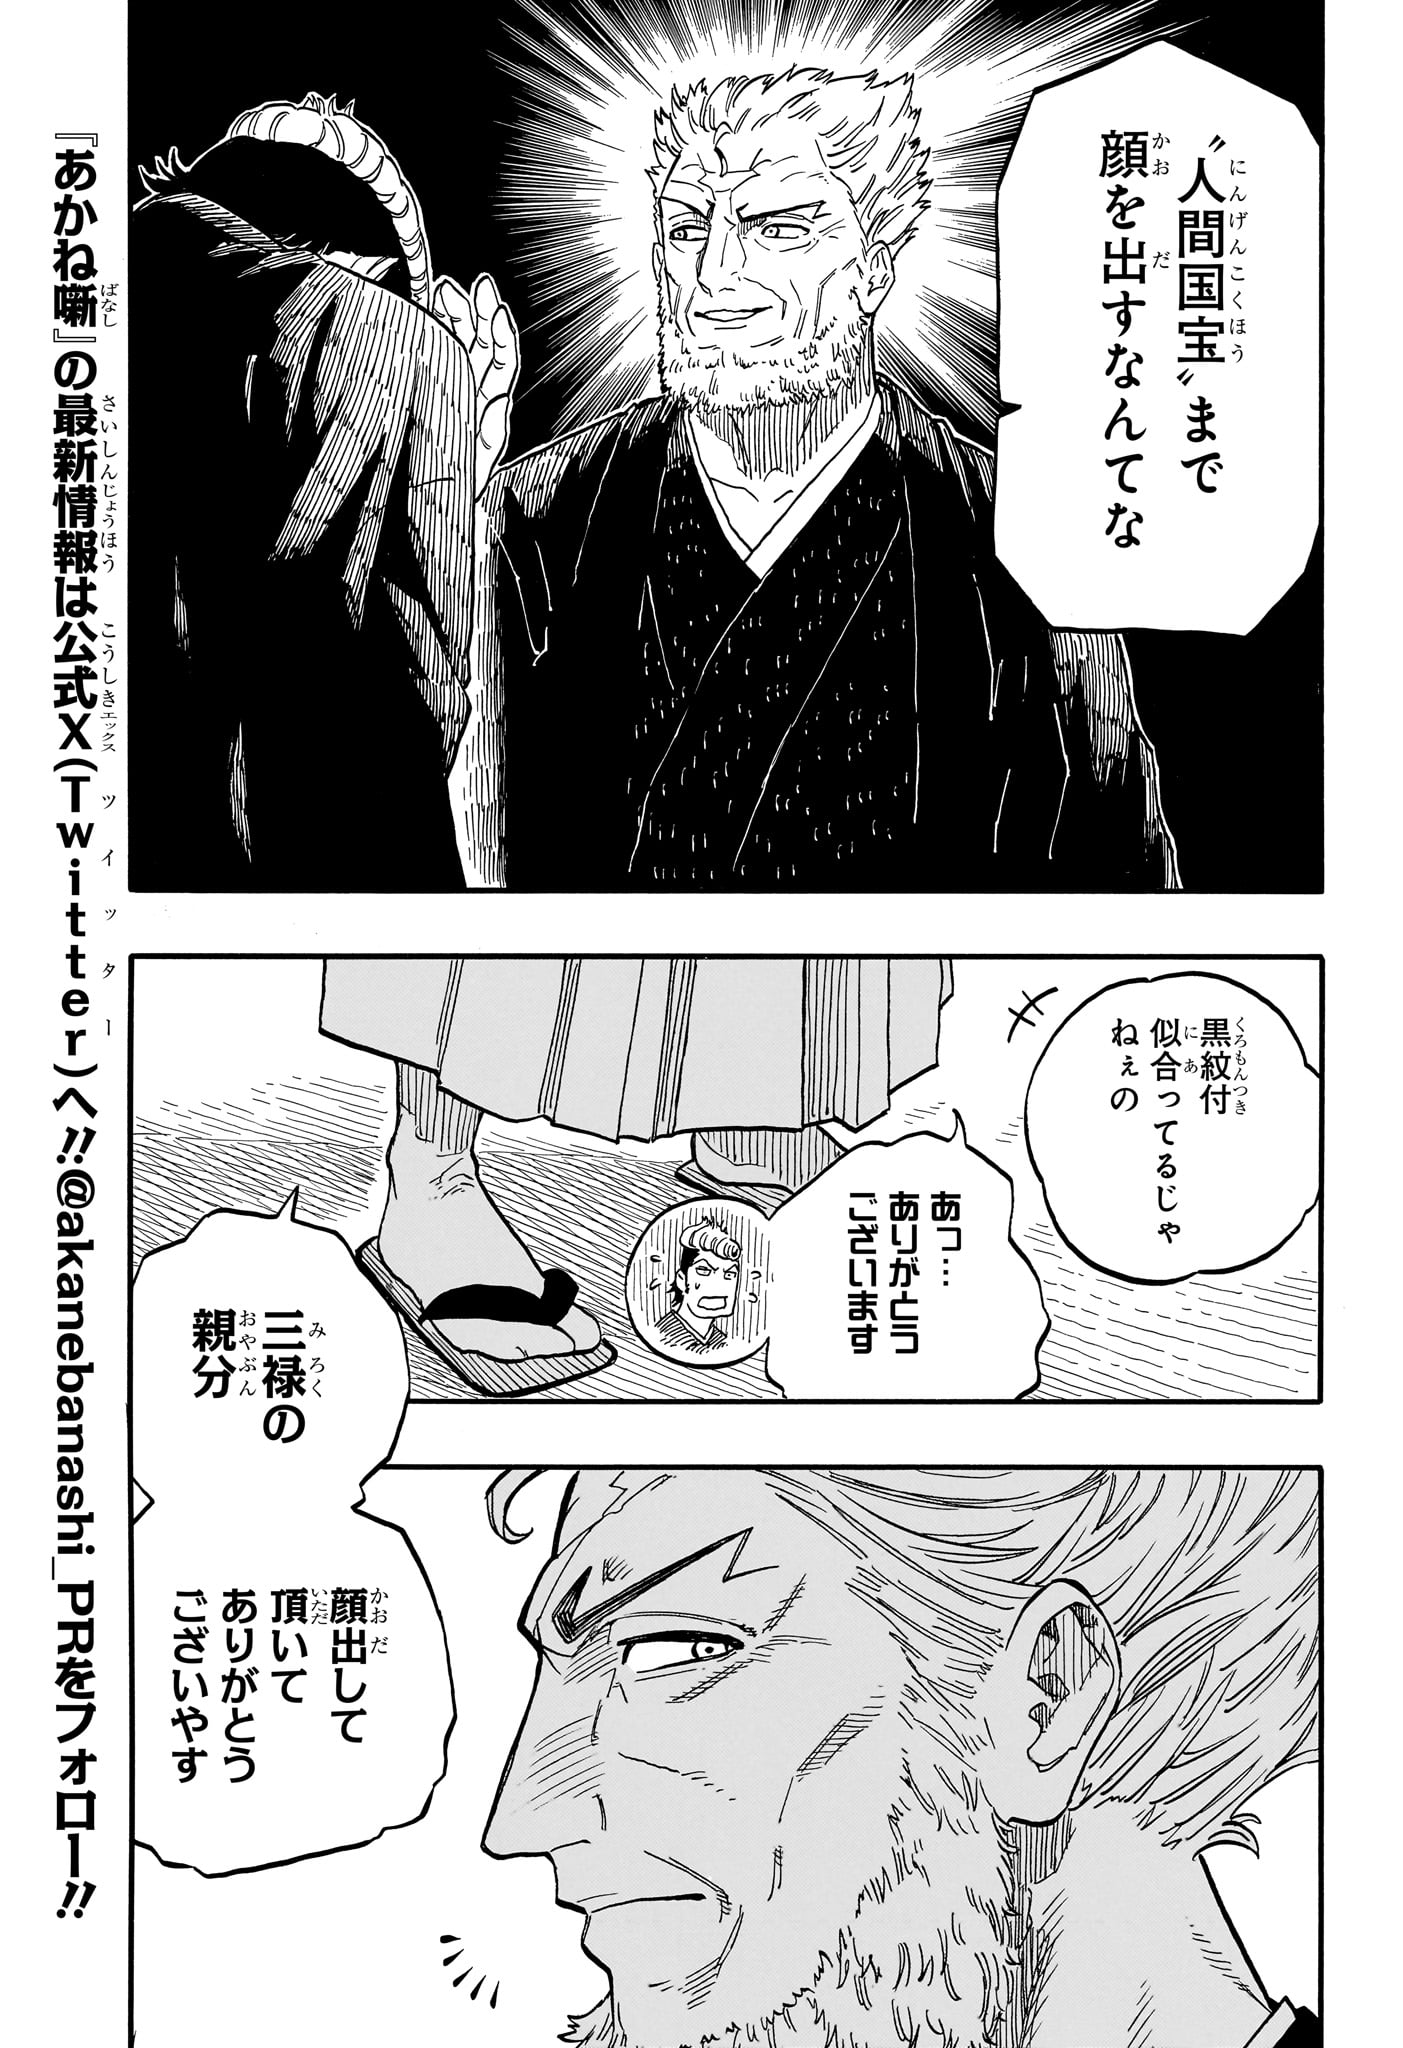 Akane-Banashi - Chapter 95 - Page 3